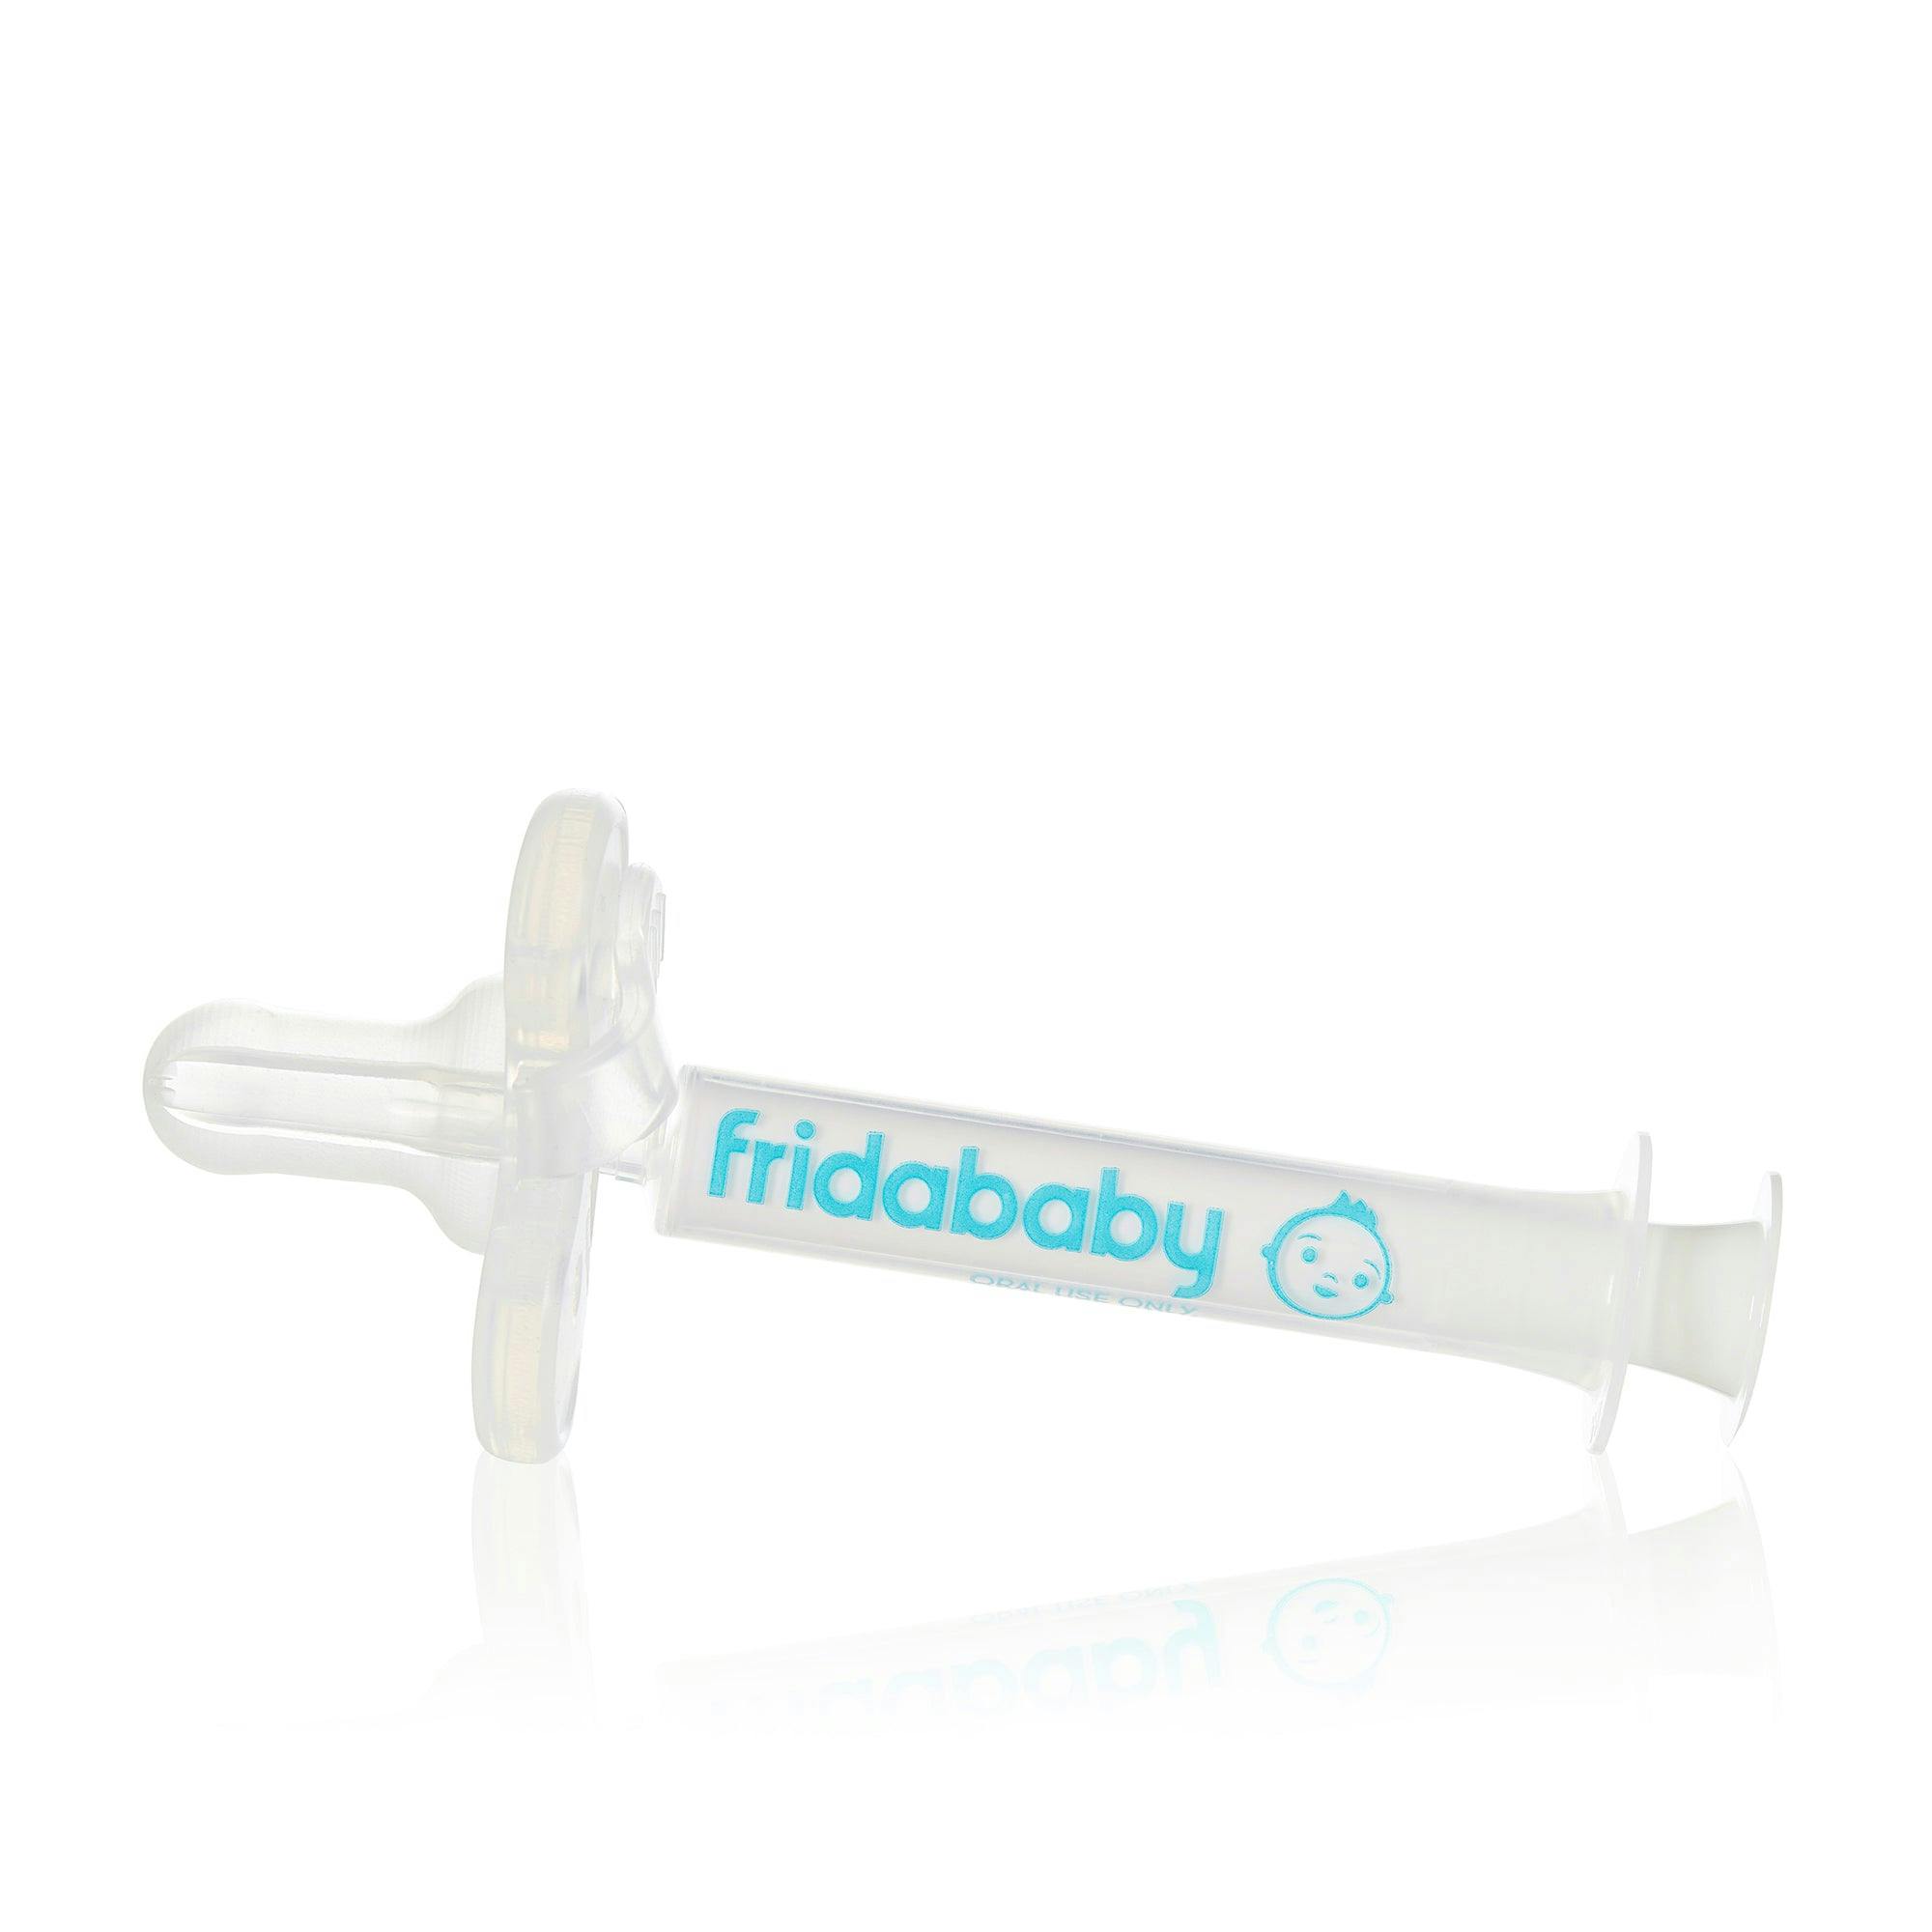 Fridababy Medifrida Accu-Dose Pacifier